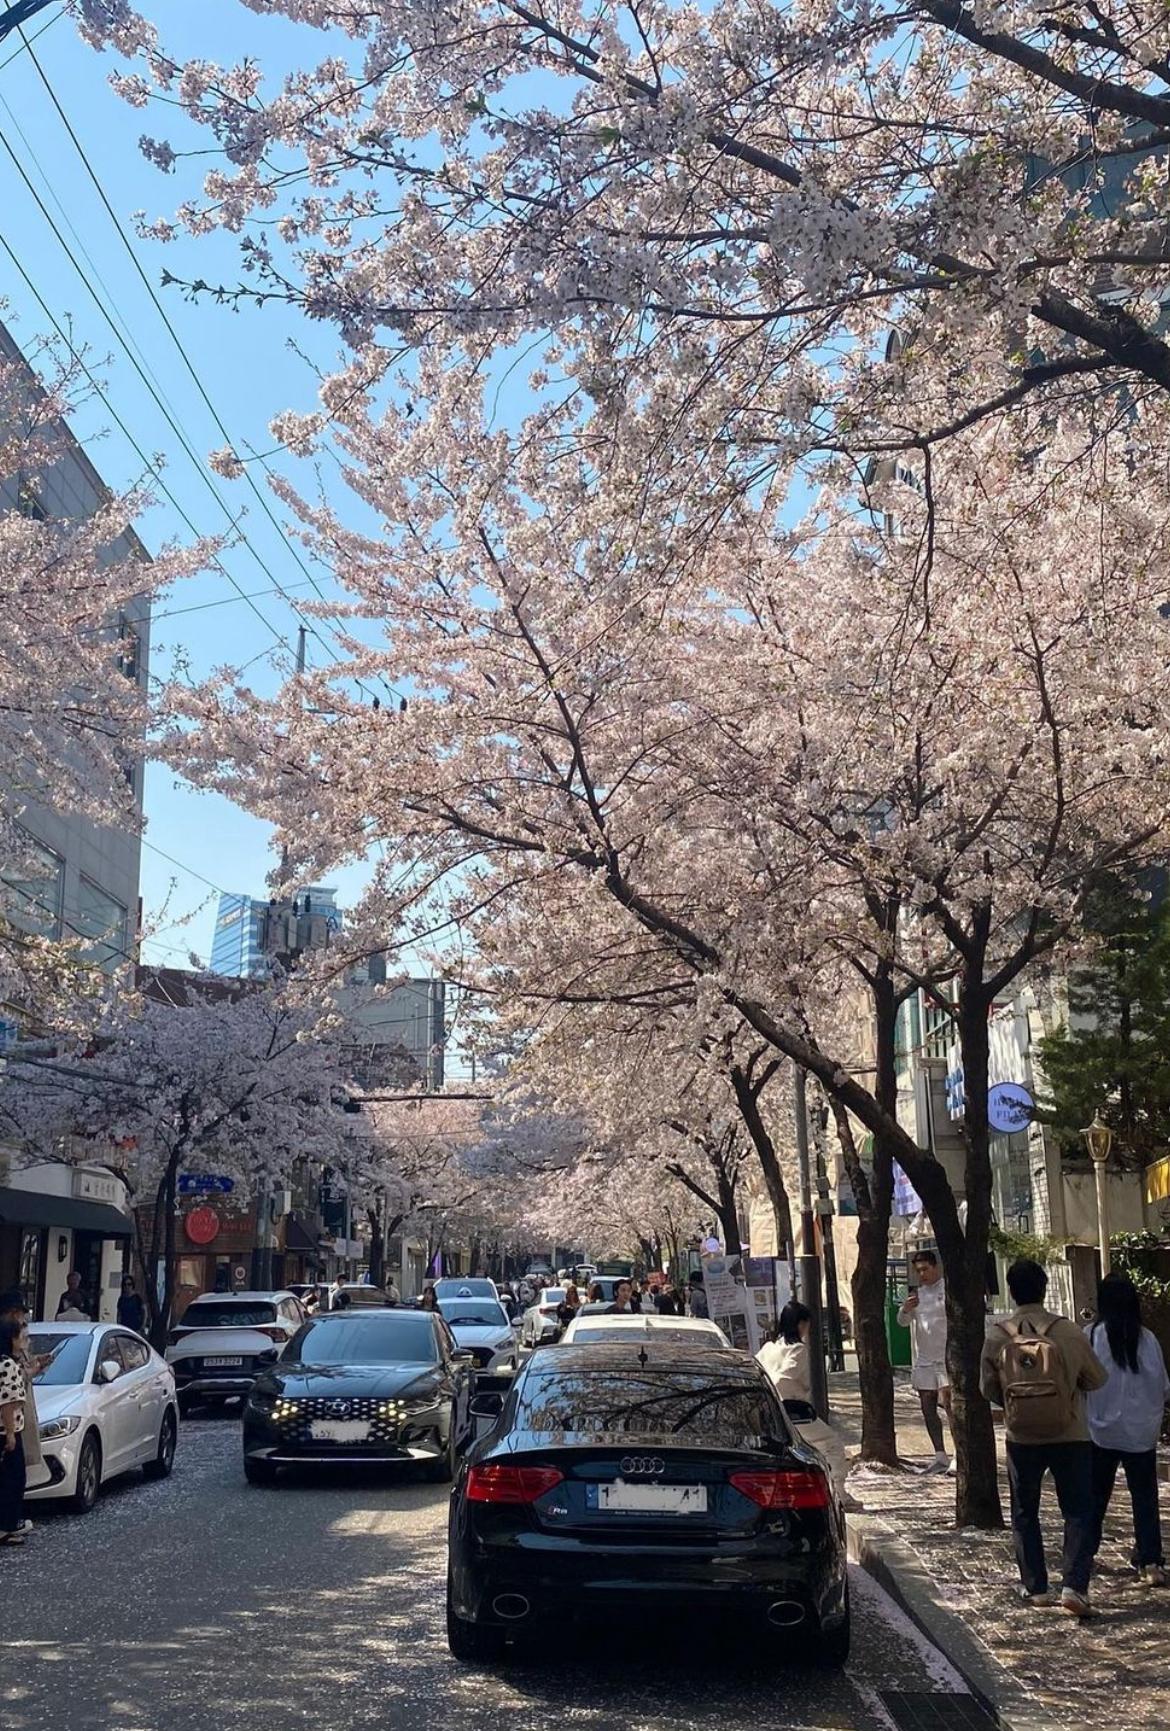 Evitar las multitudes: 3 lugares de flores de cerezo en Seúl